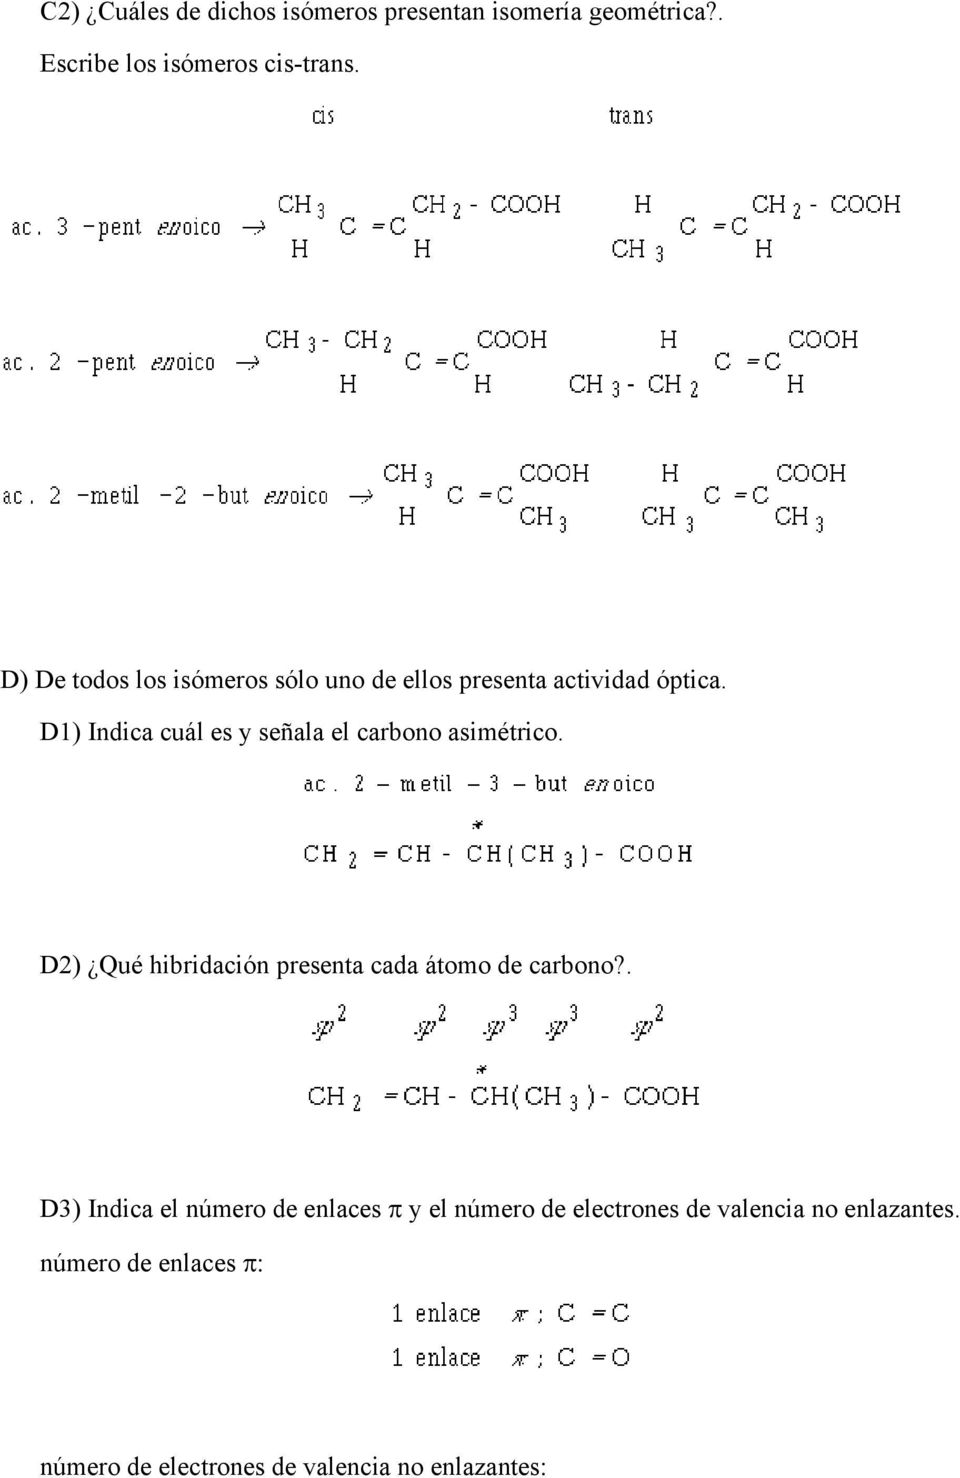 D1) Indica cuál es y señala el carbono asimétrico. D2) Qué hibridación presenta cada átomo de carbono?